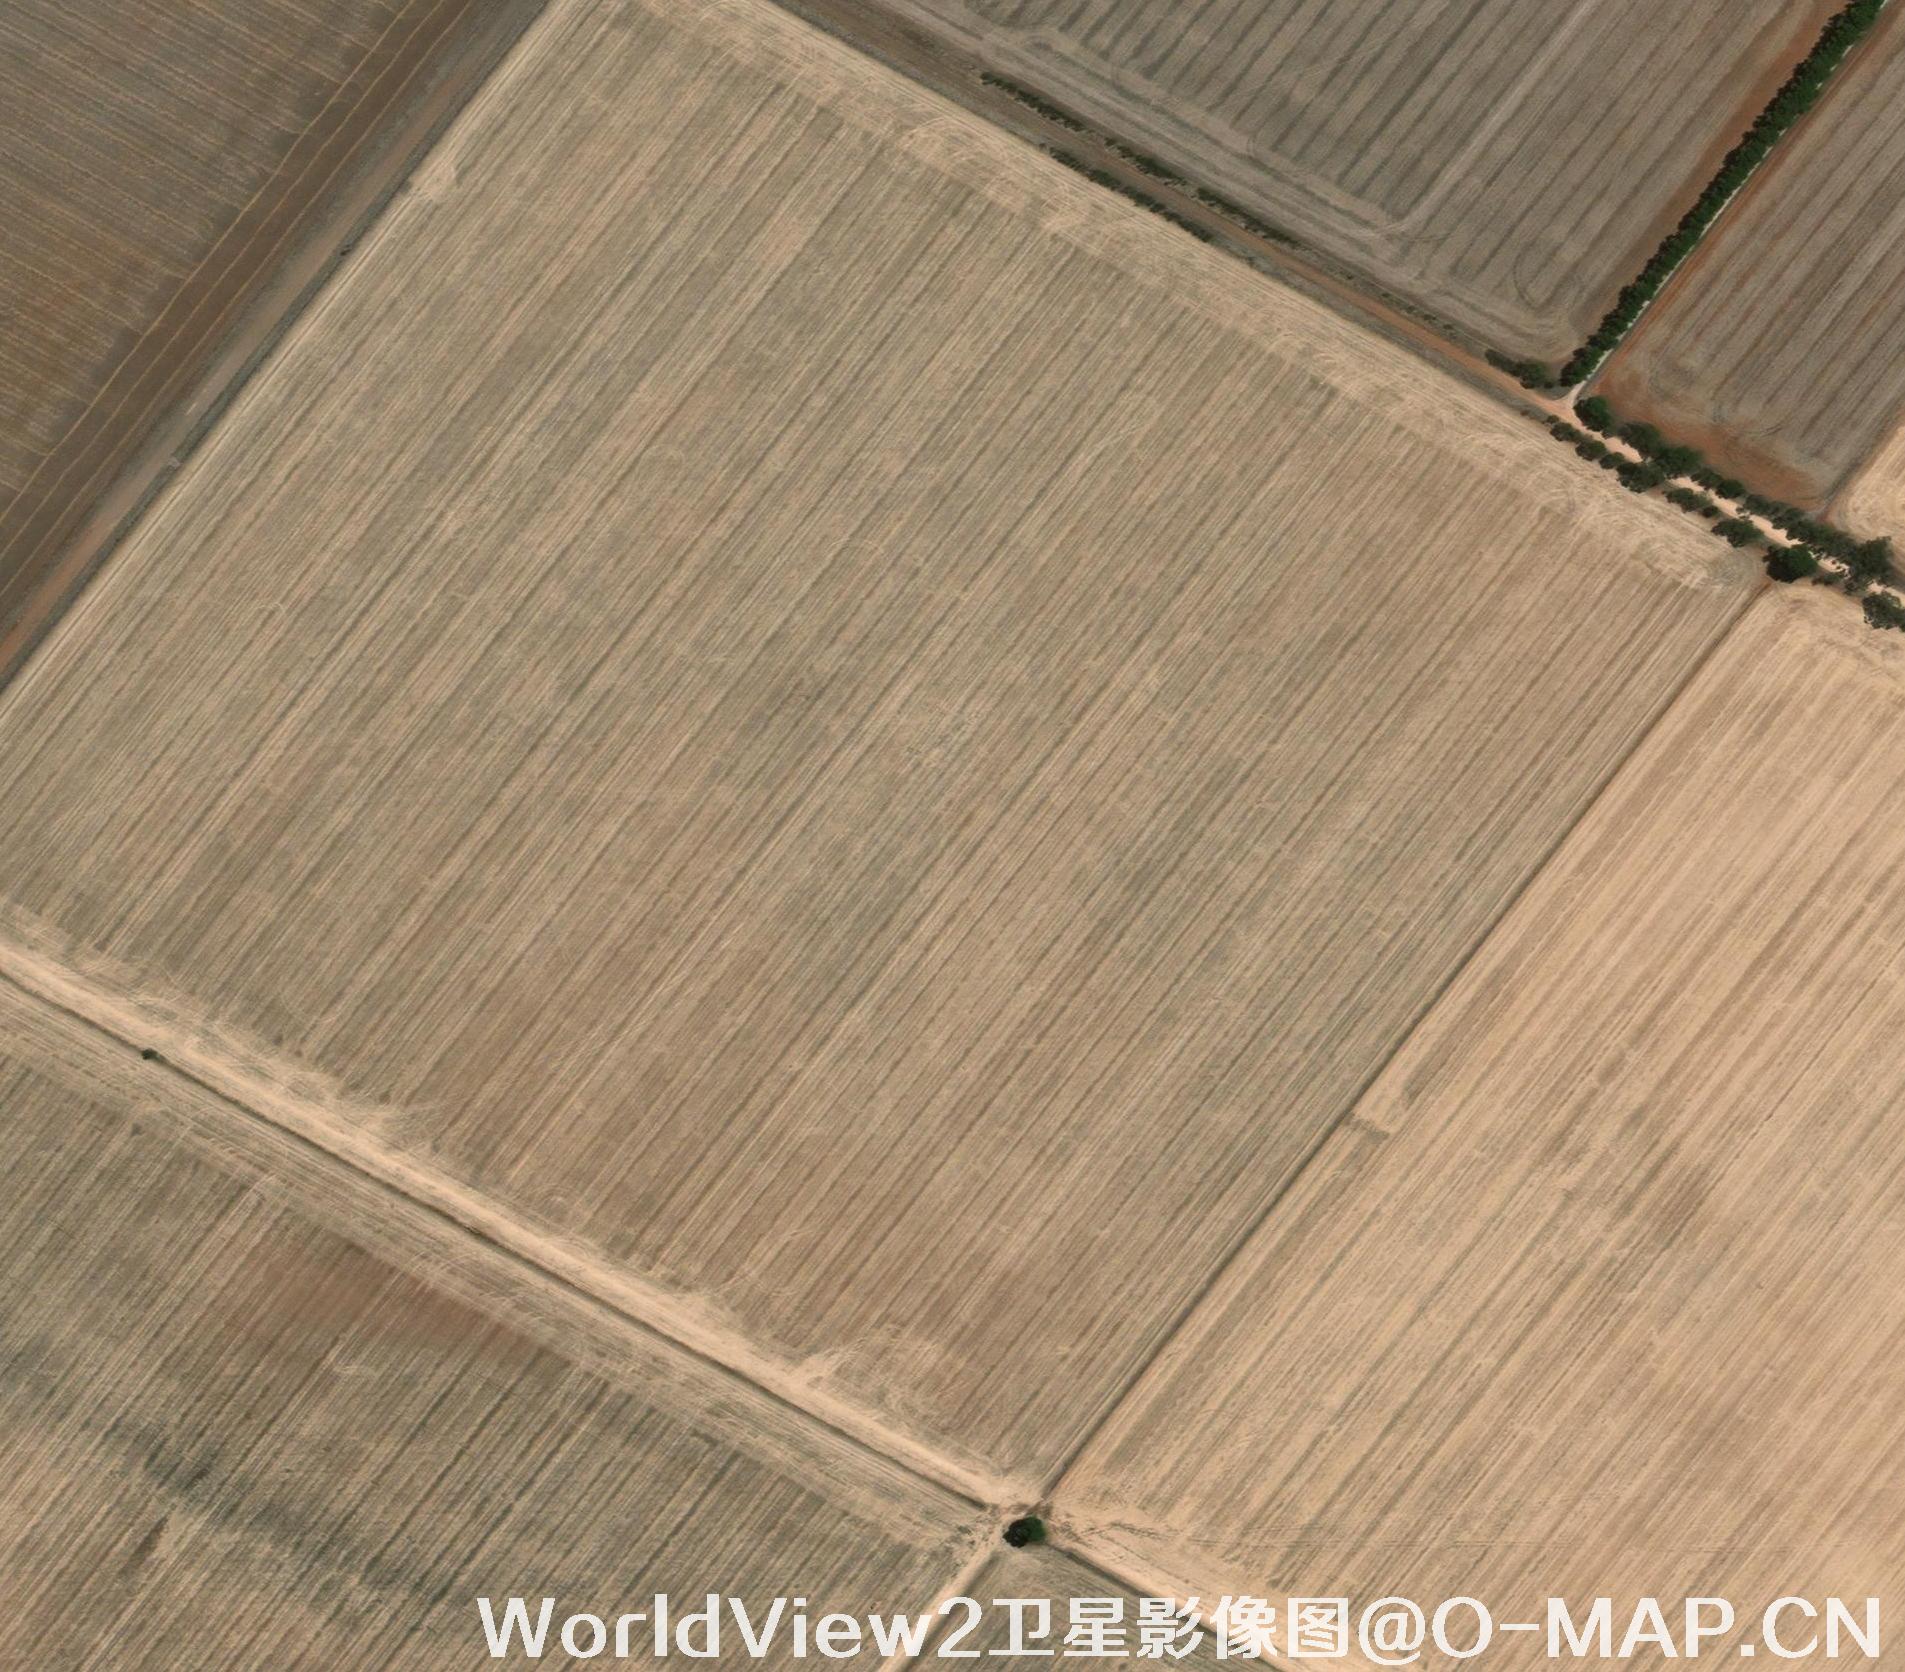 耕地土壤墒情动态监测与评价—长光卫星技术股份有限公司